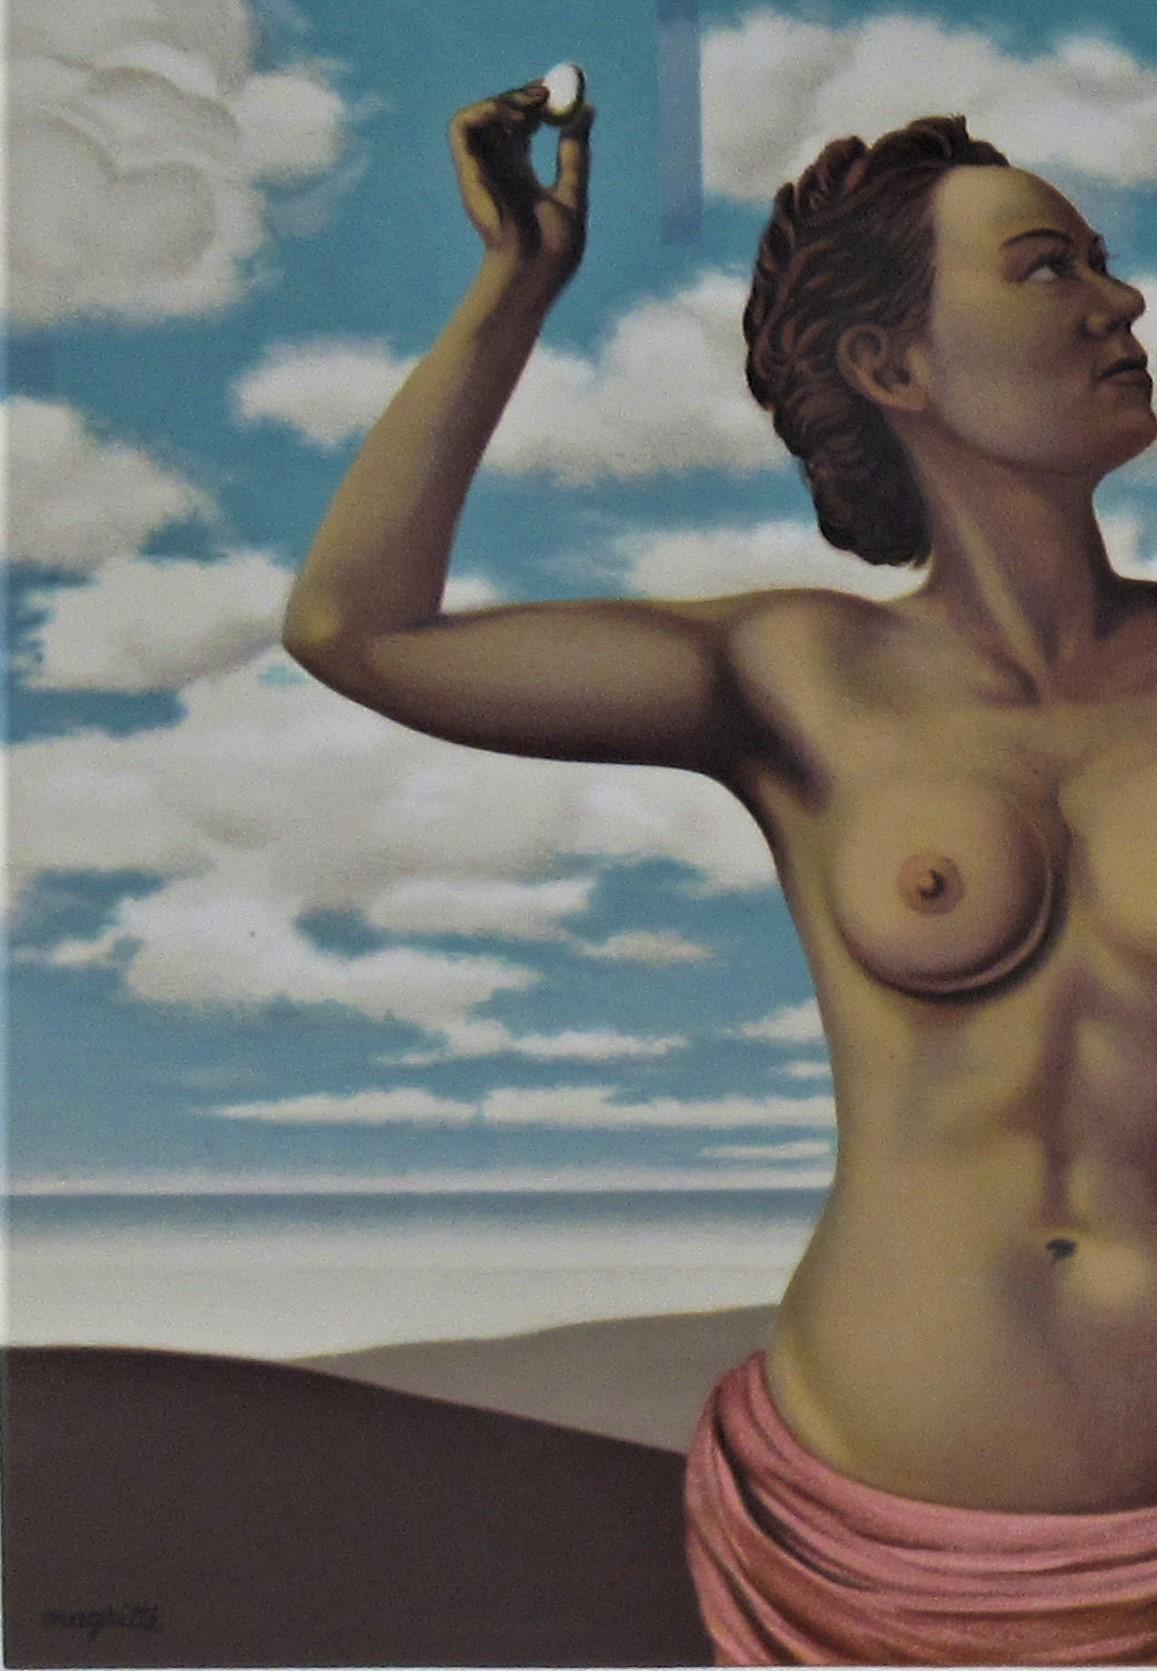 Une Jeune Femme Presente With Grace, de Les Enfants Trouves - Gris Nude Print par (after) René Magritte